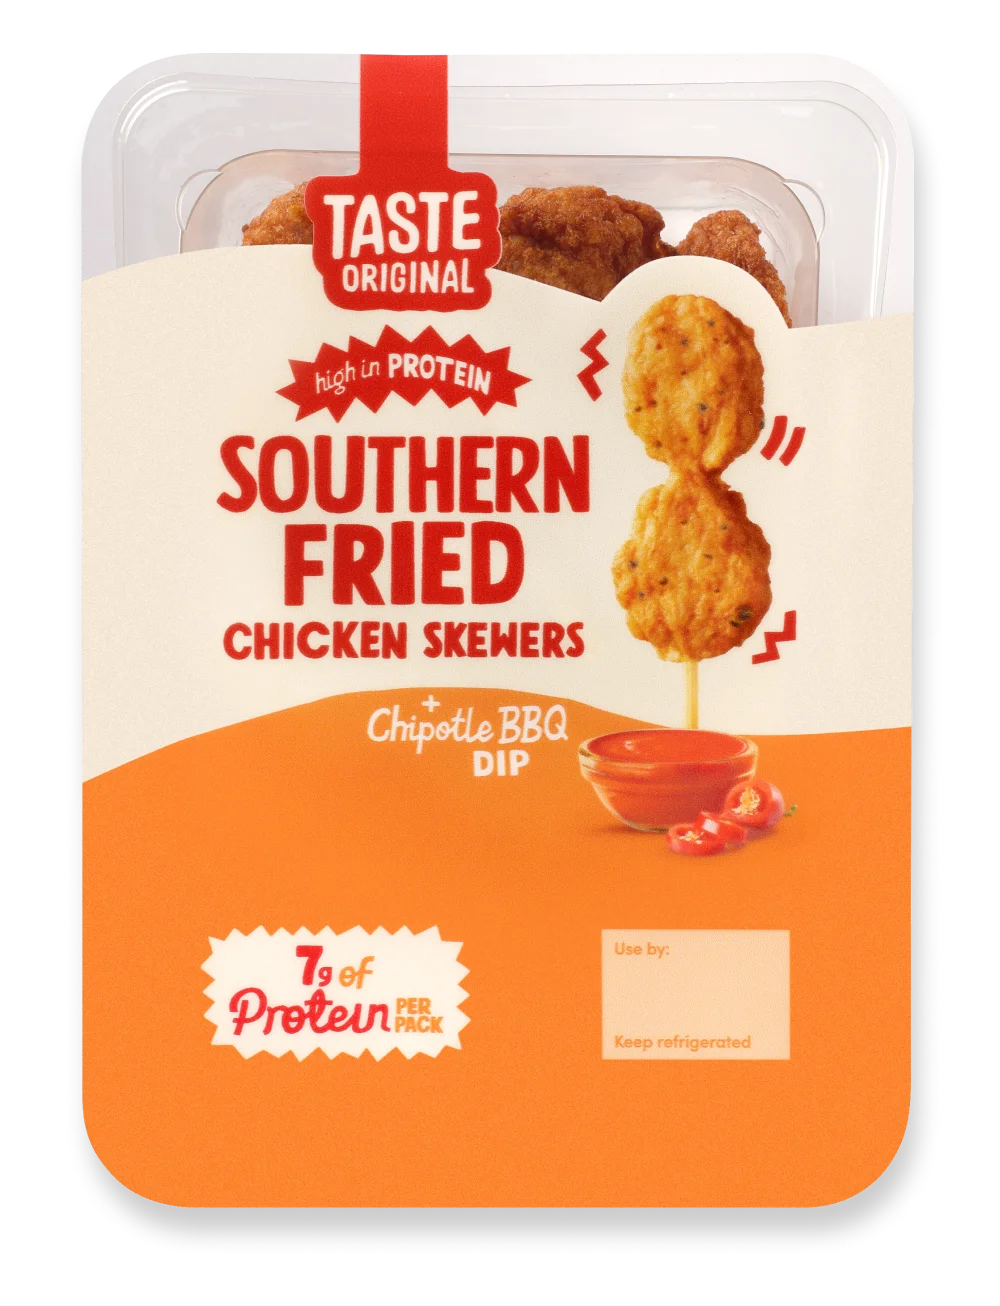 Taste Original Southern Fried Chicken Skewers